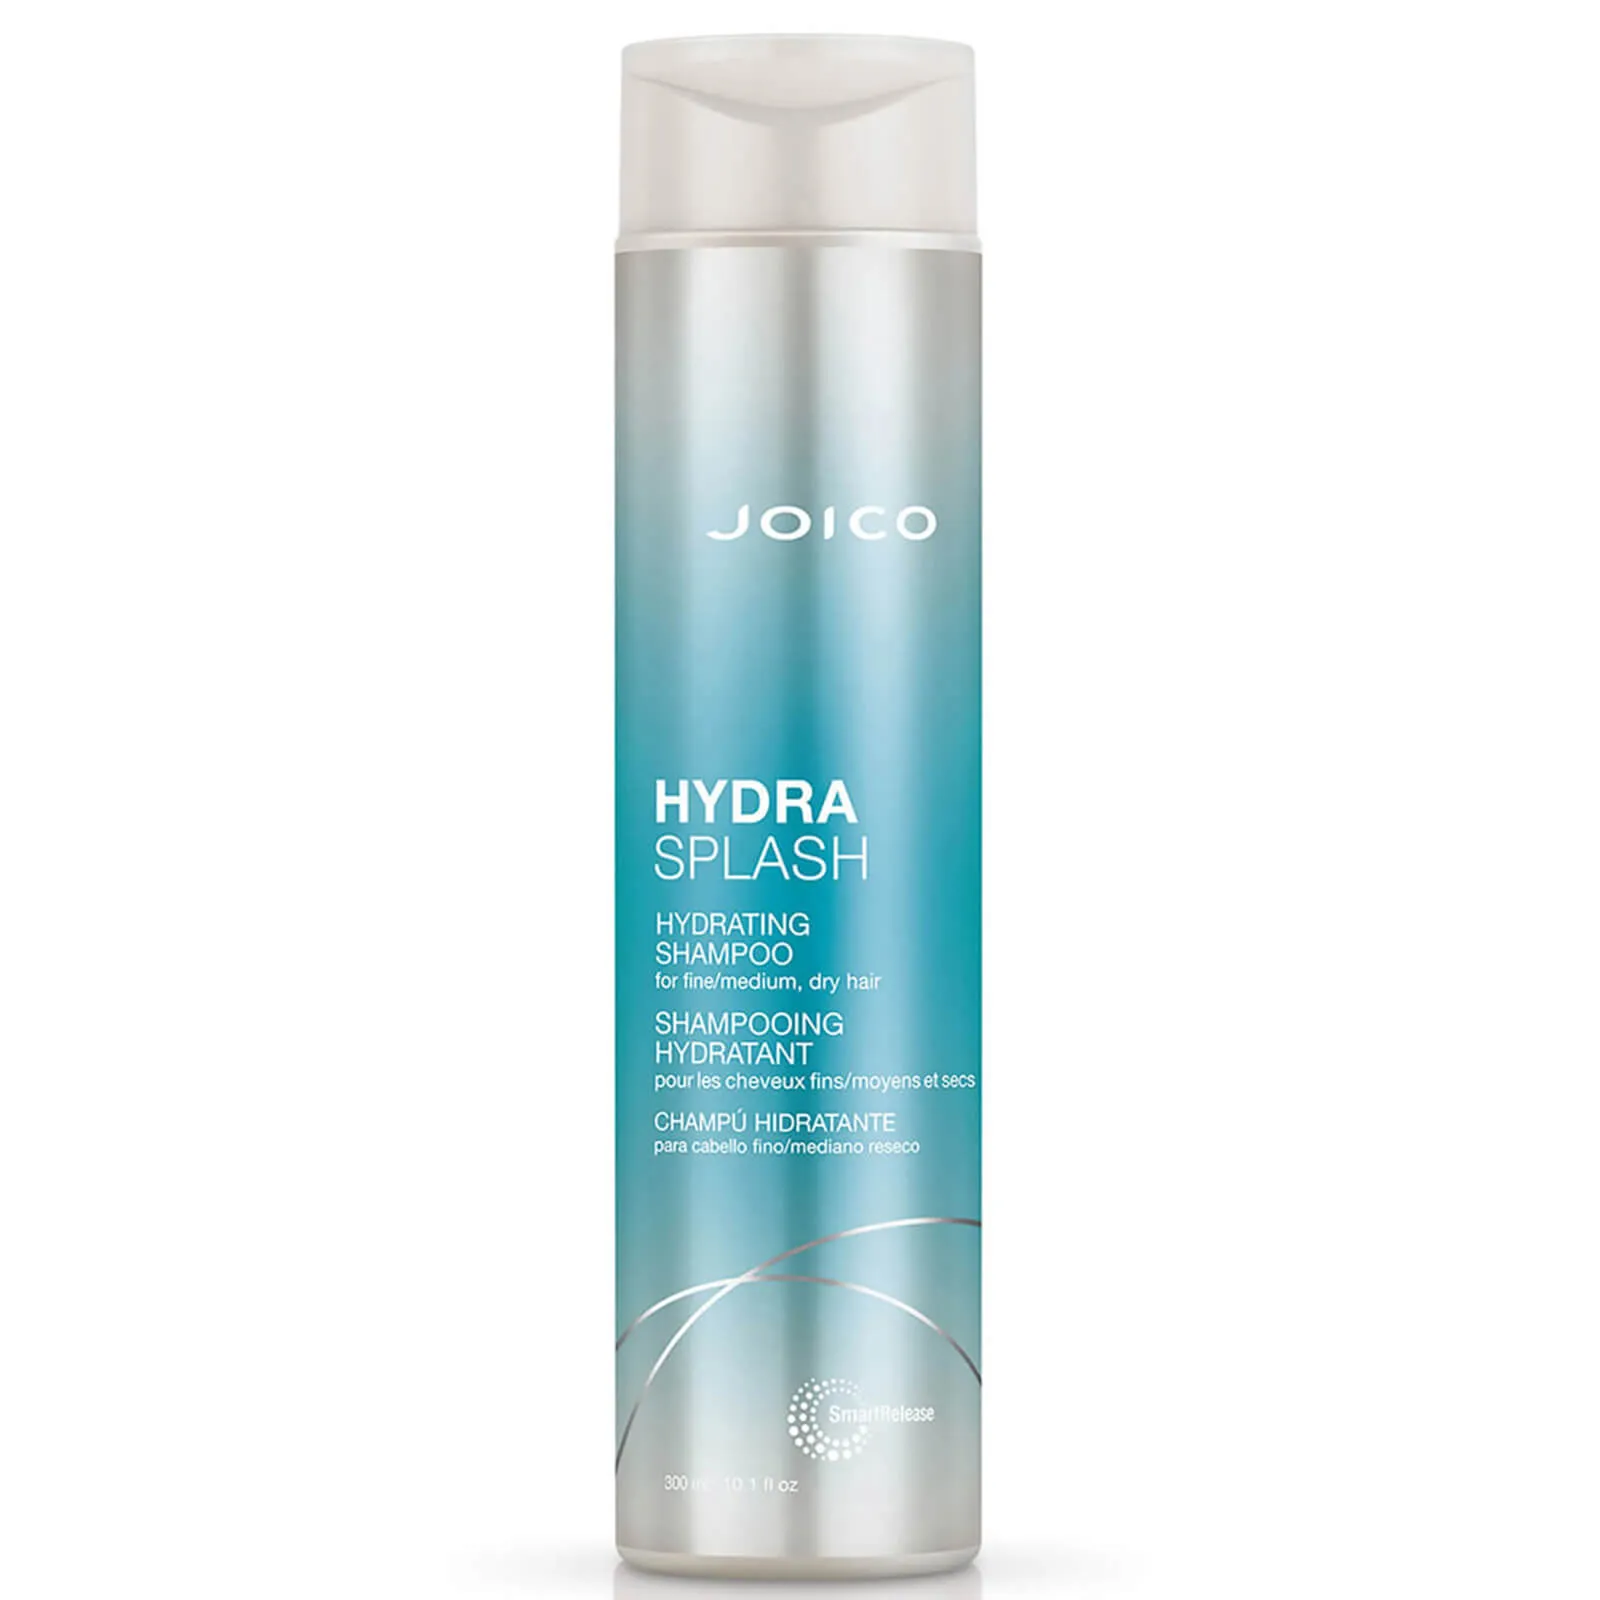  Hydra Splash Hydrating Shampoo For Fine-Medium, Dry Hair 300ml